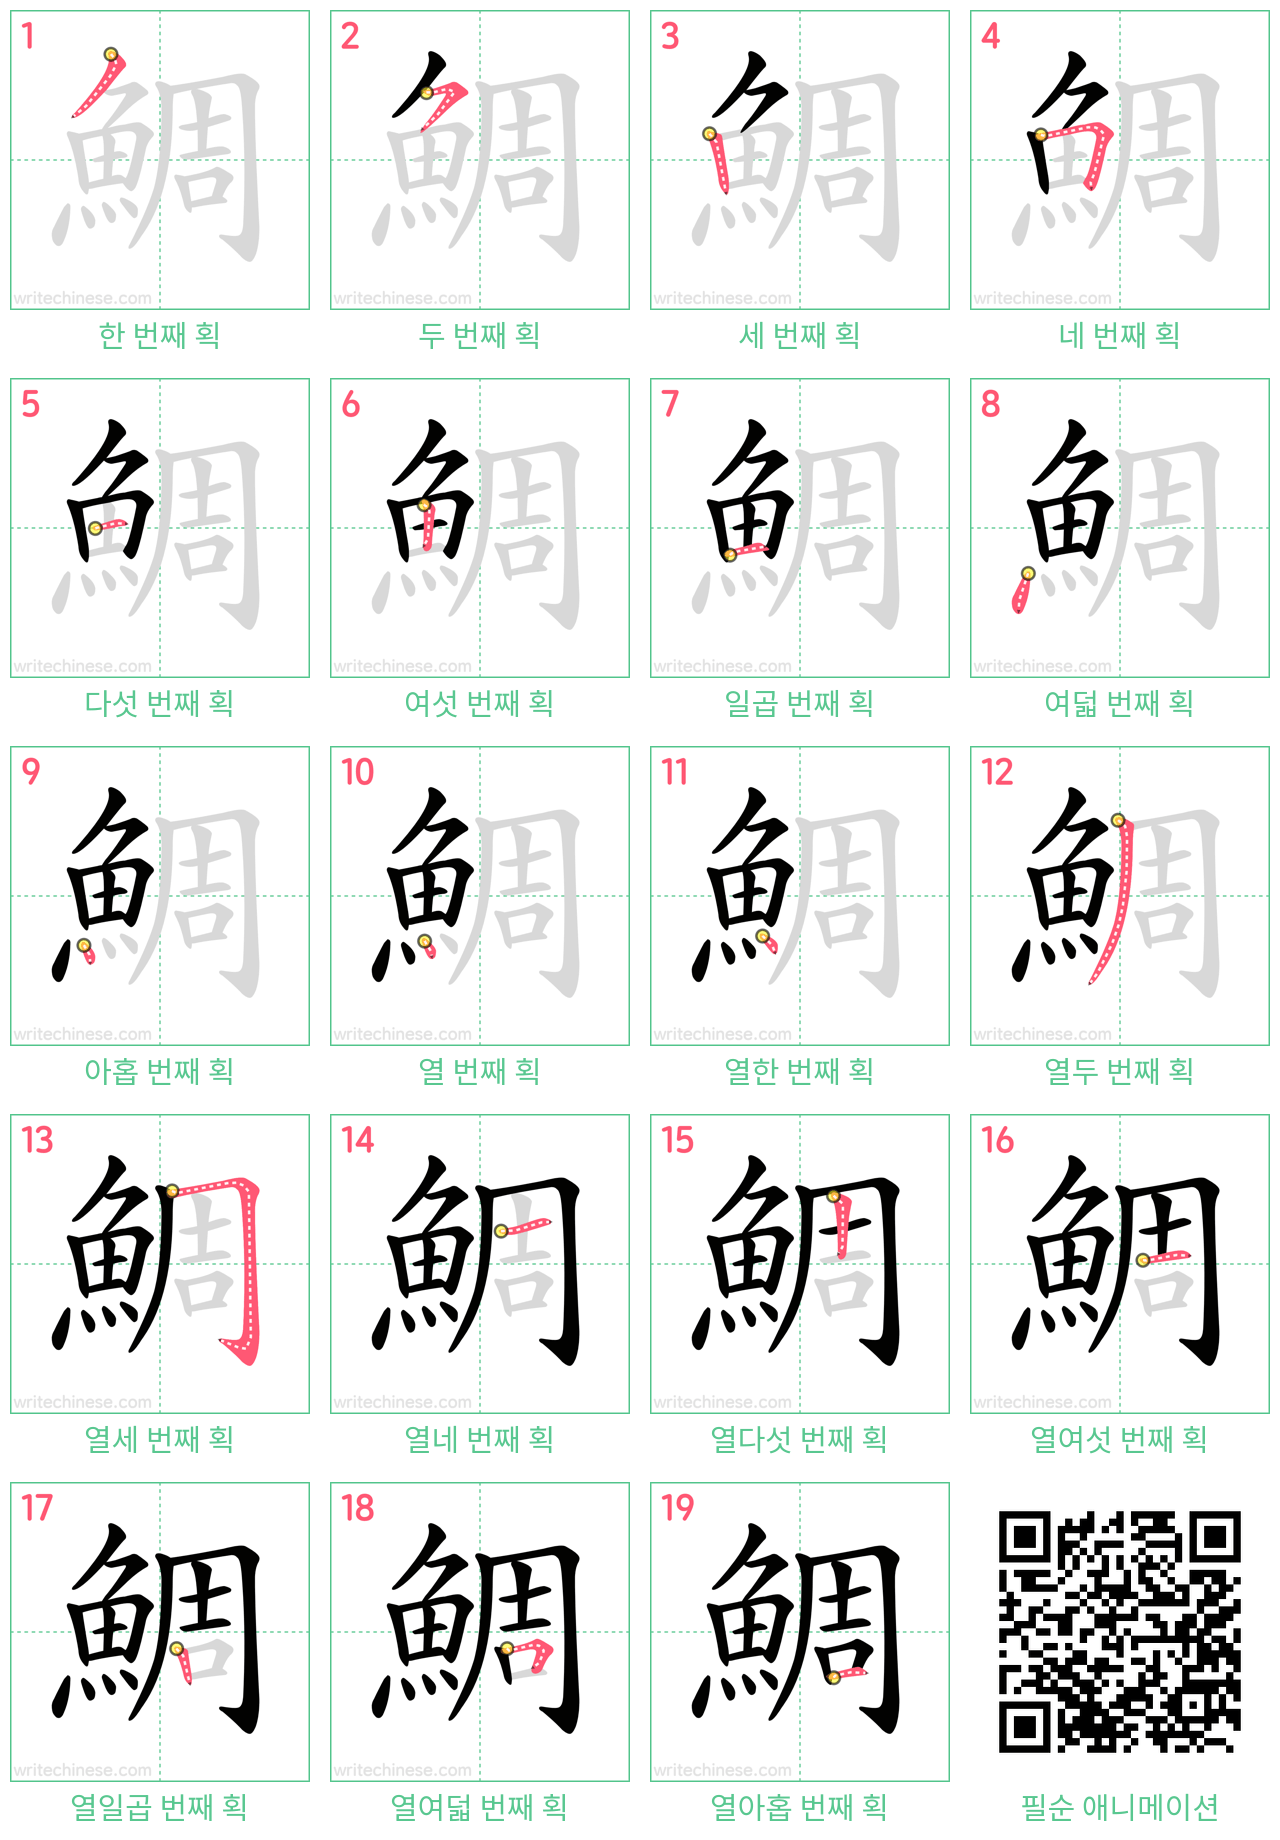 鯛 step-by-step stroke order diagrams